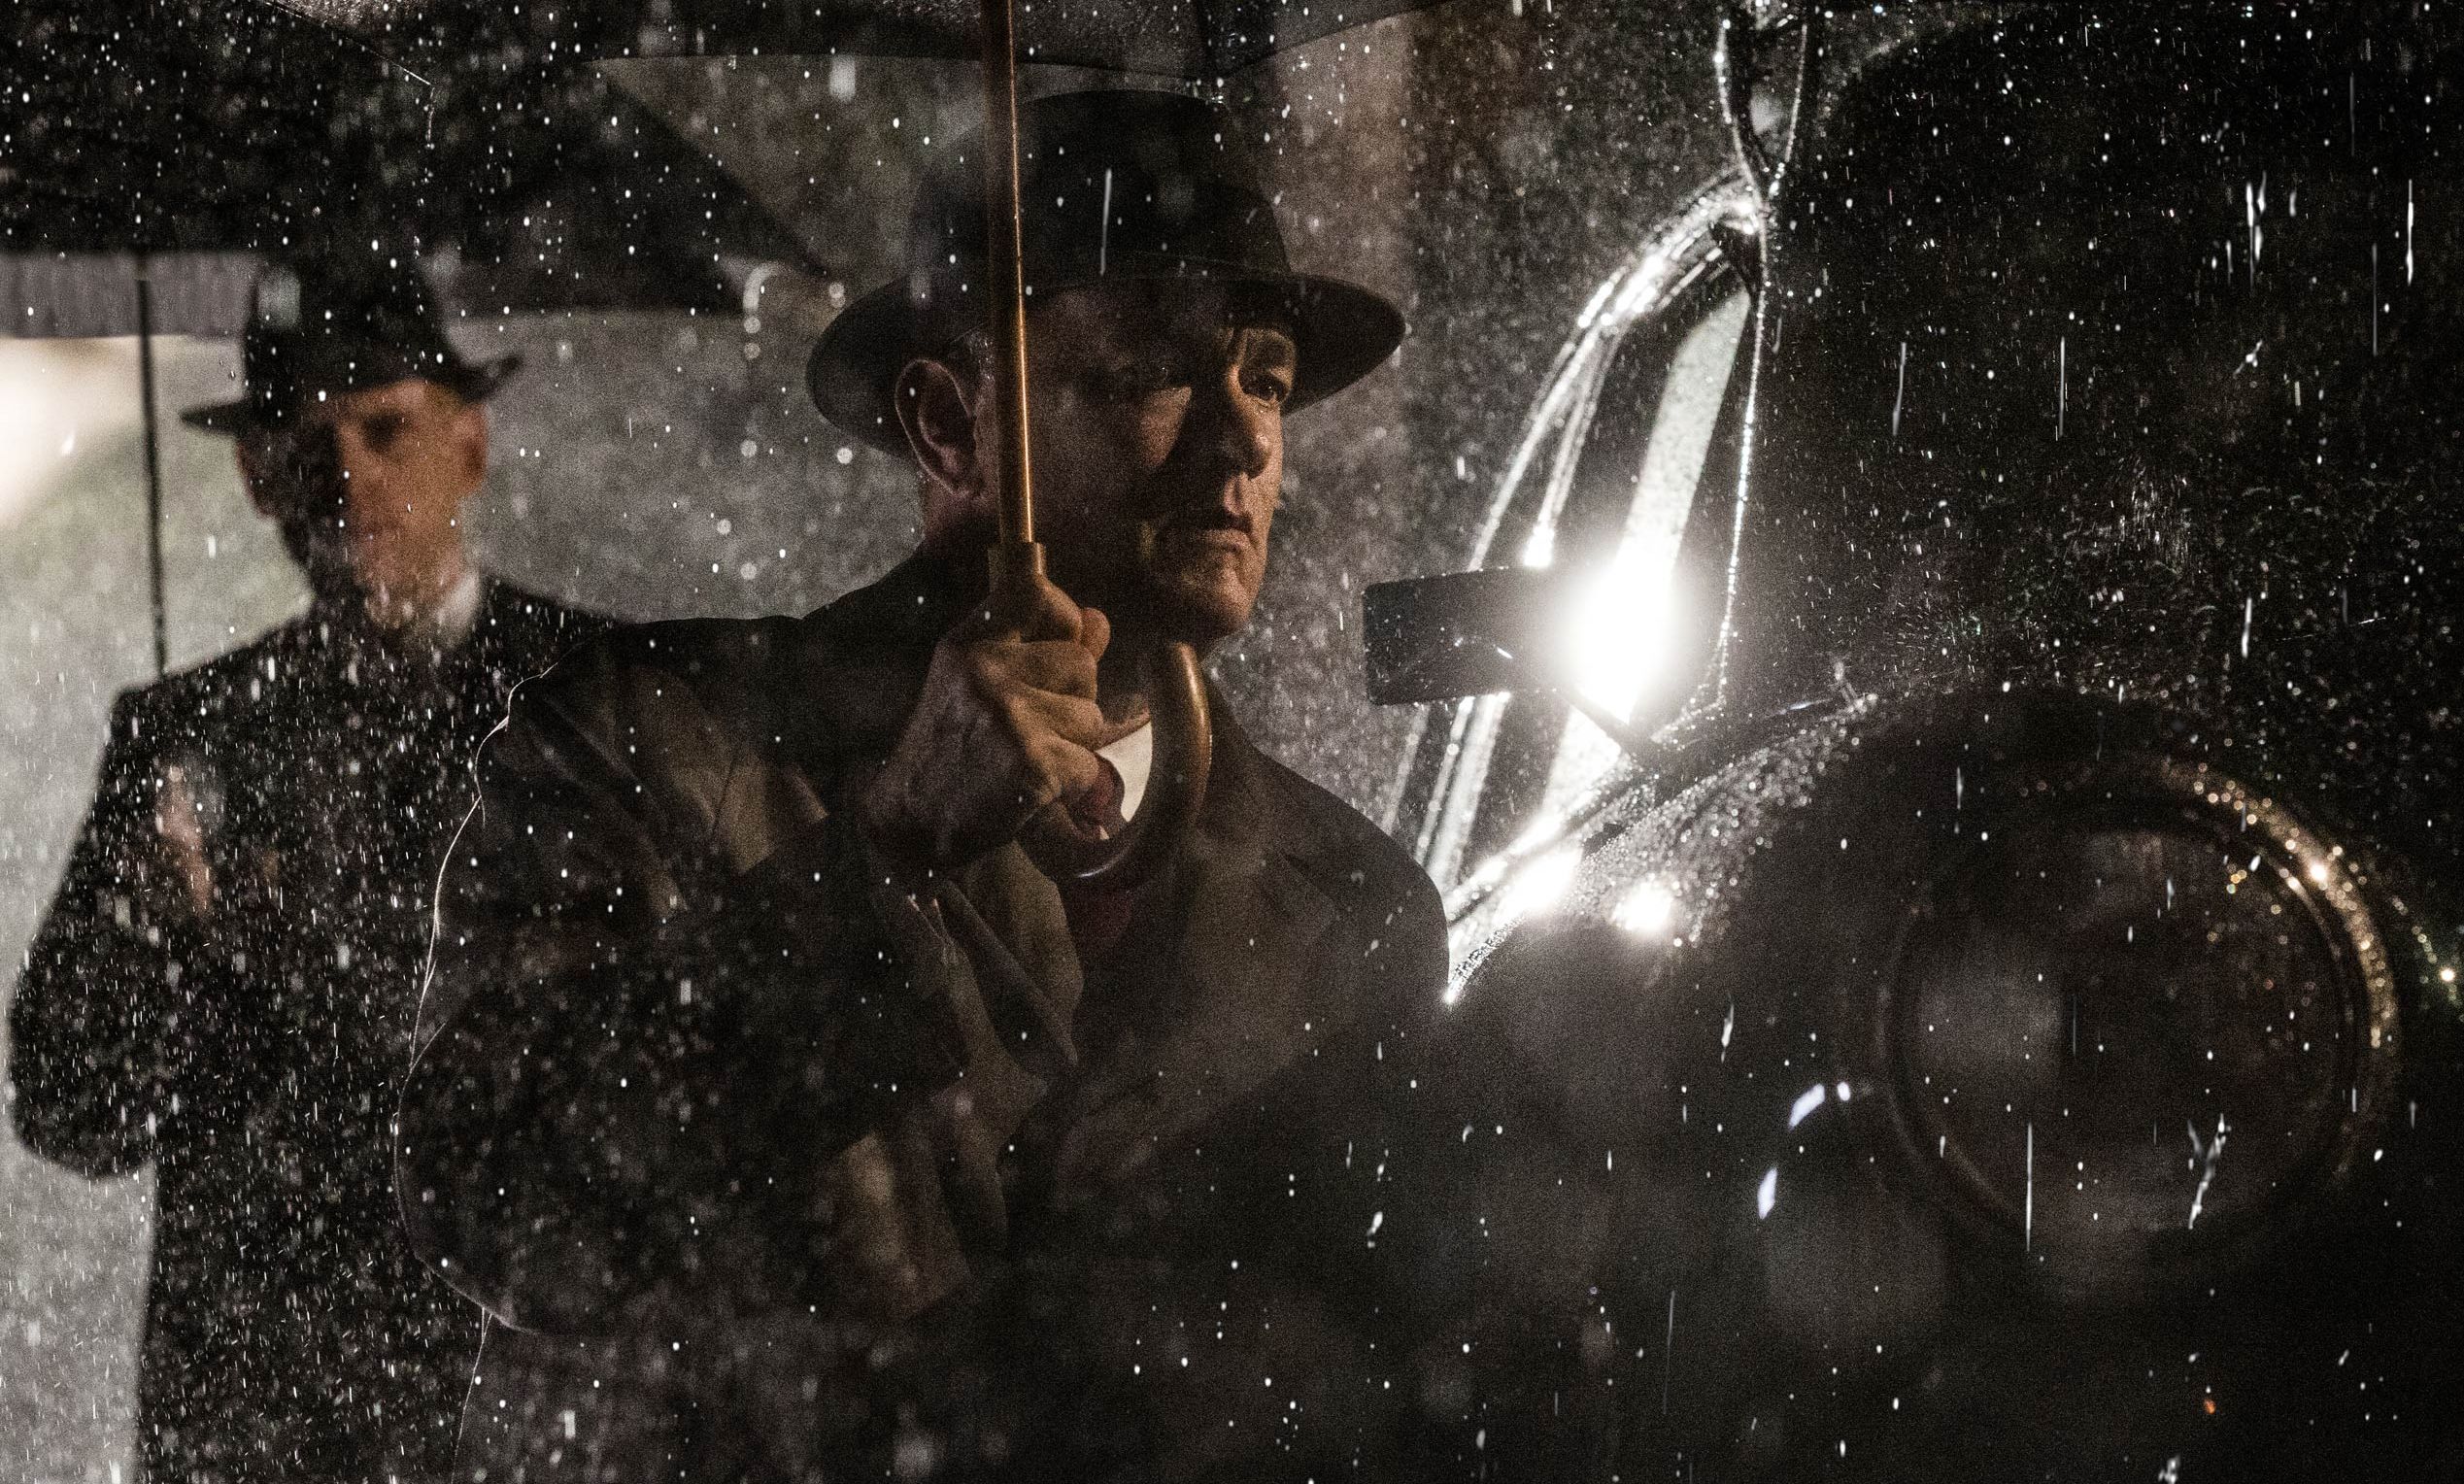 Tom Hanks in the rain